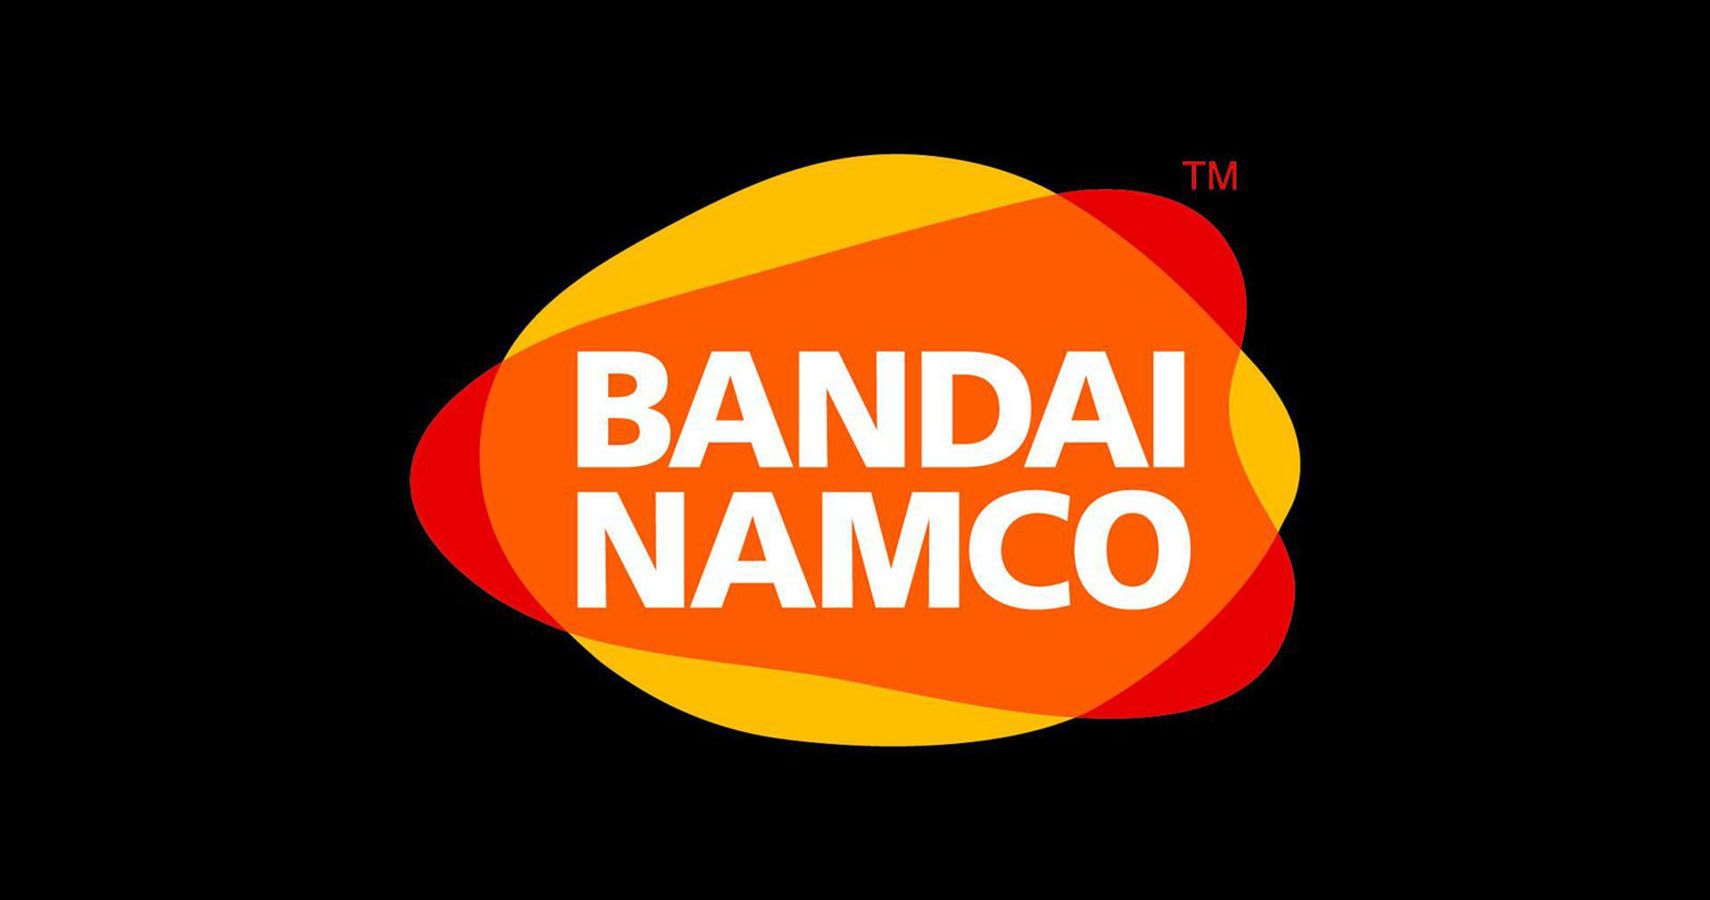 Bandai Namco Logo on black background